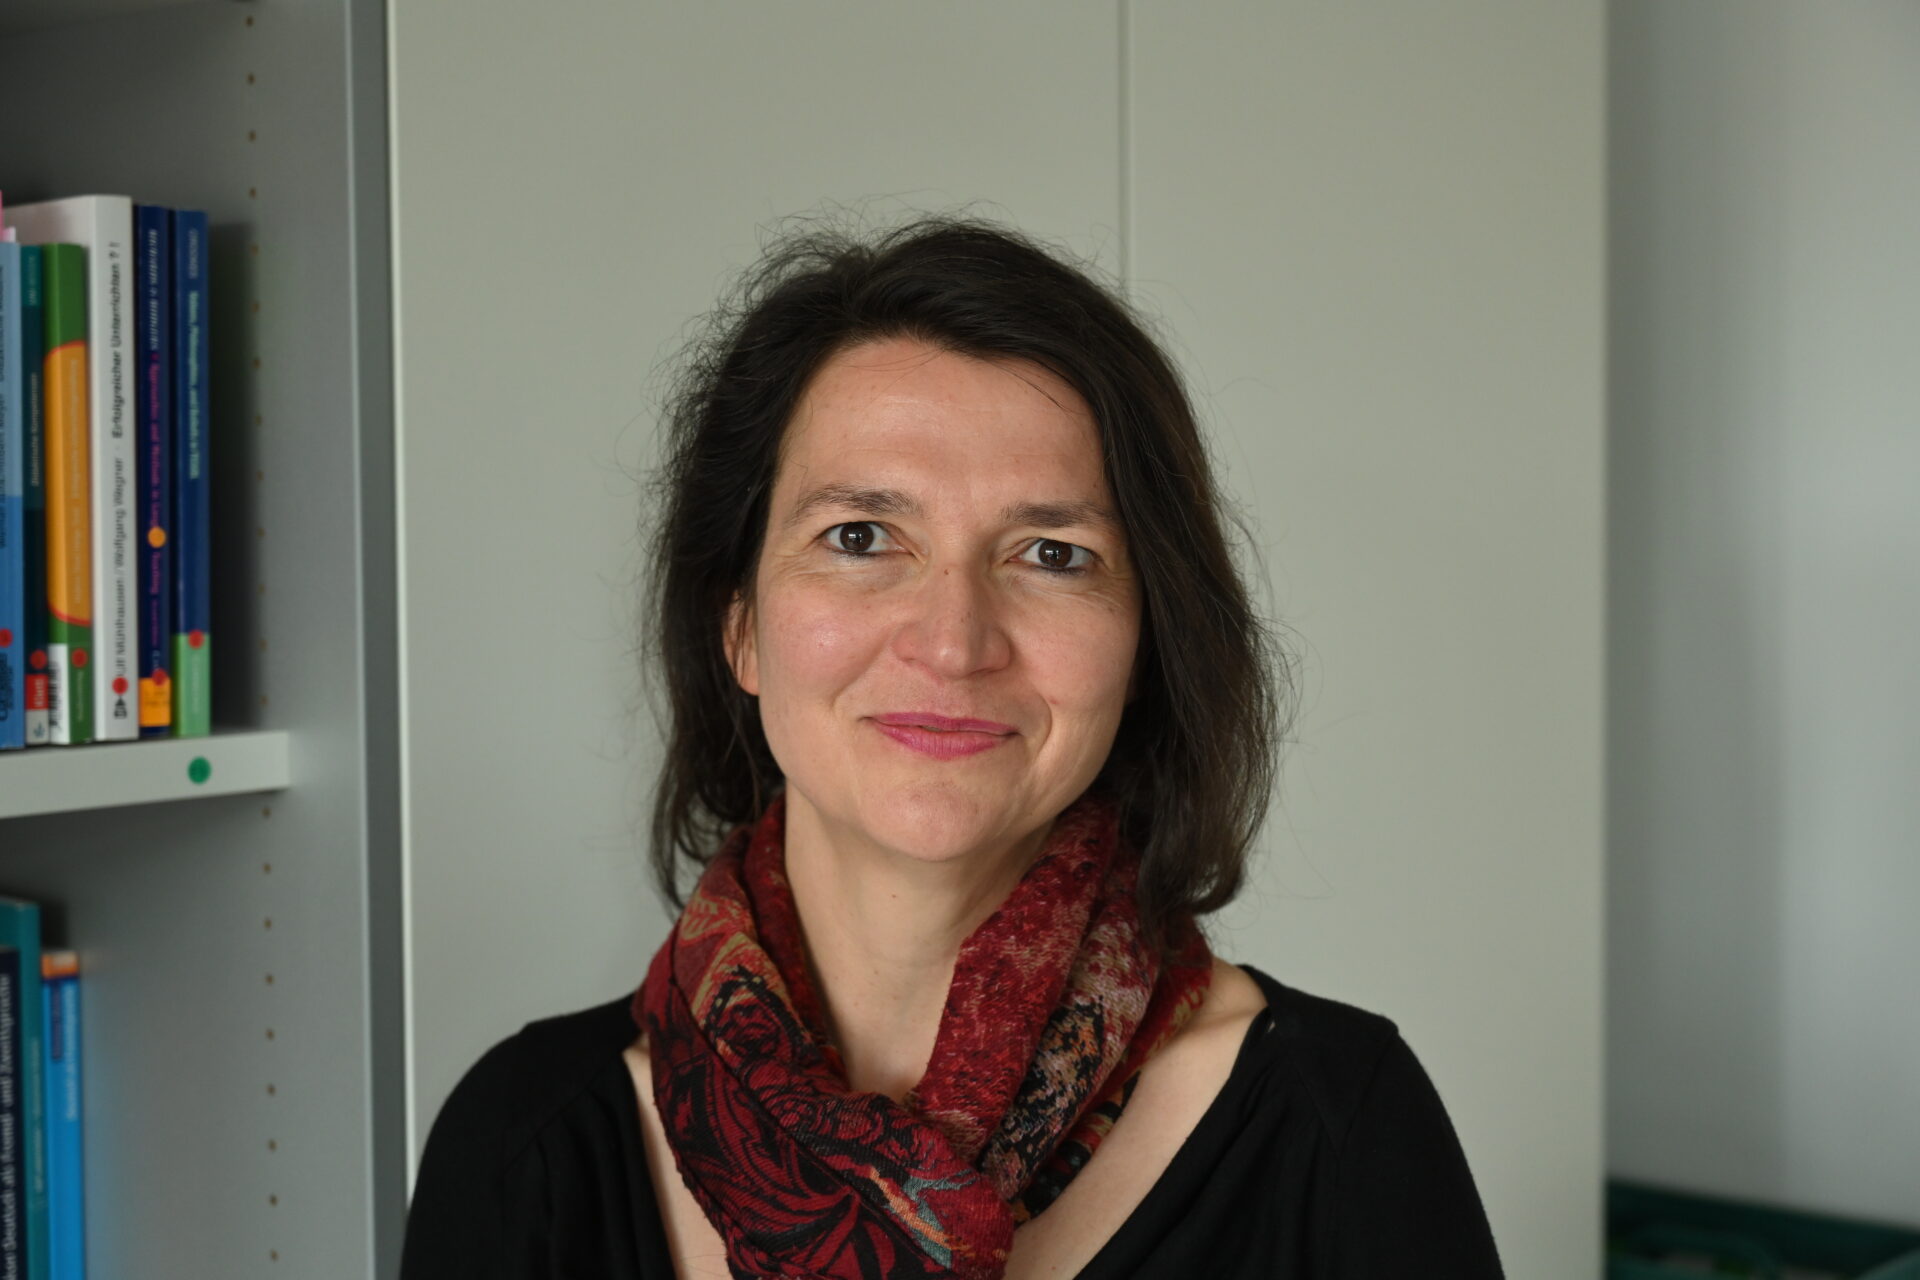 Dorothea Spaniel-Weise